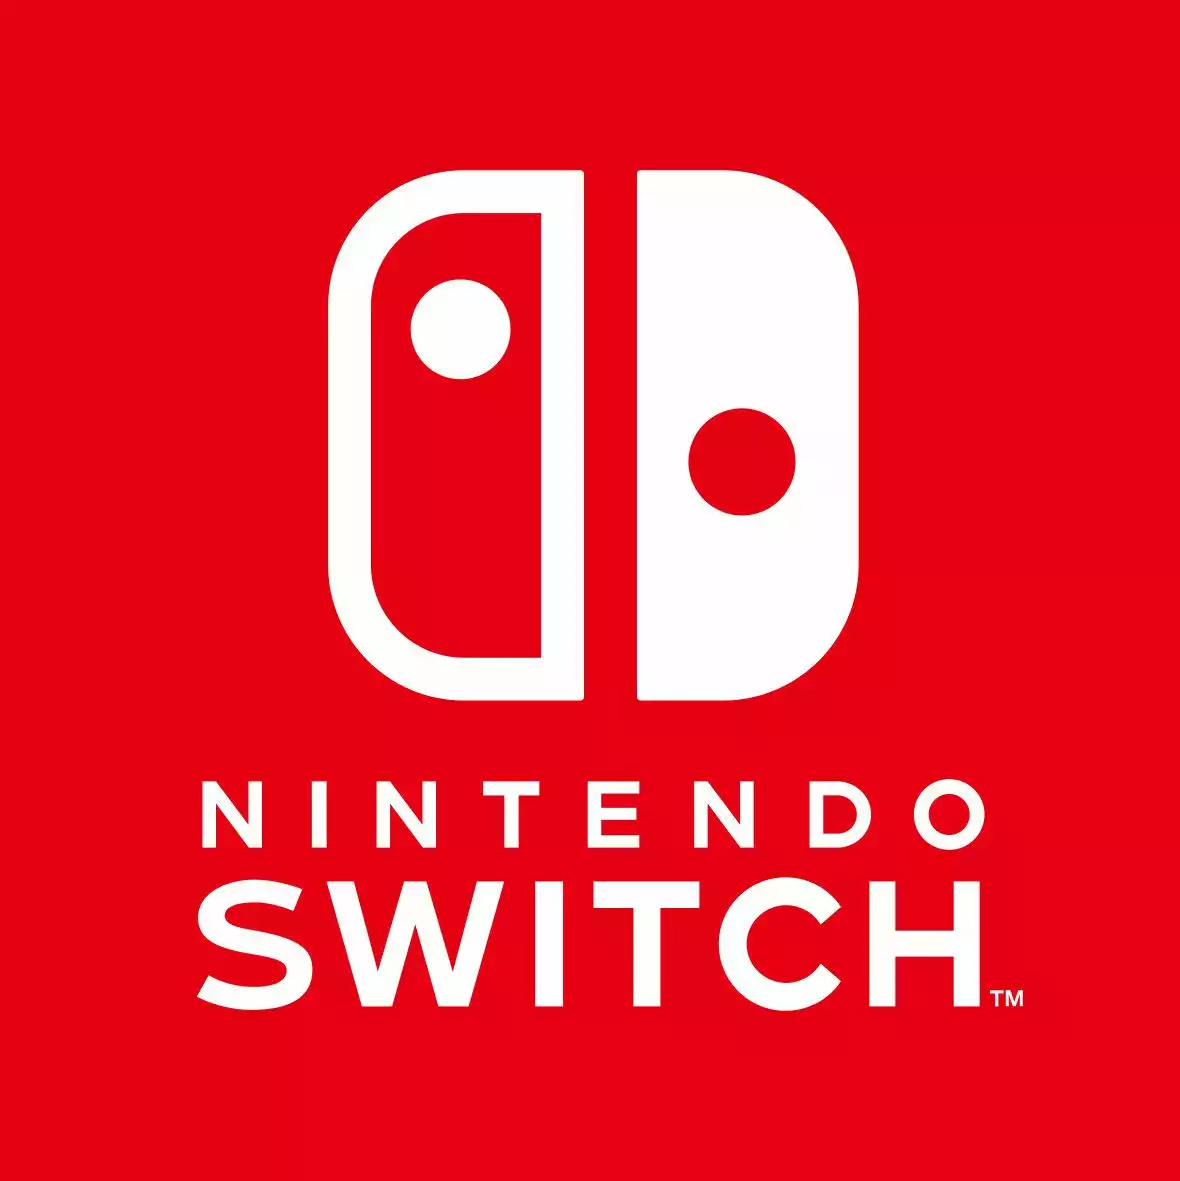 Nintendo Switch - logo.